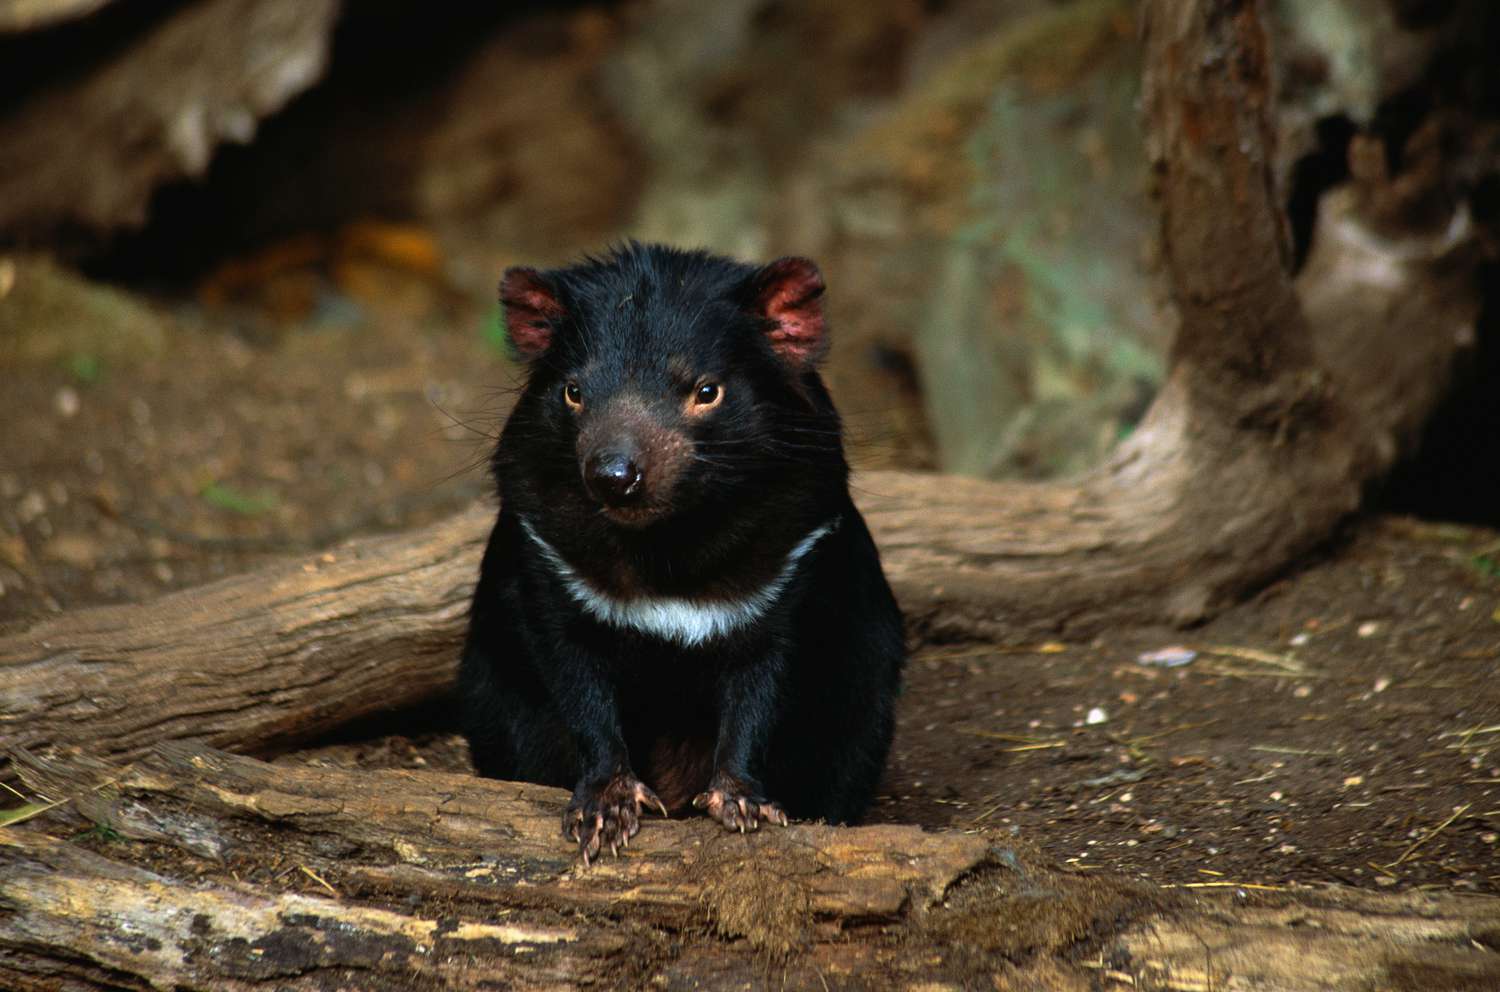 Тасманский дьявол, находящийся под угрозой исчезновения, сидит на земле в лесу